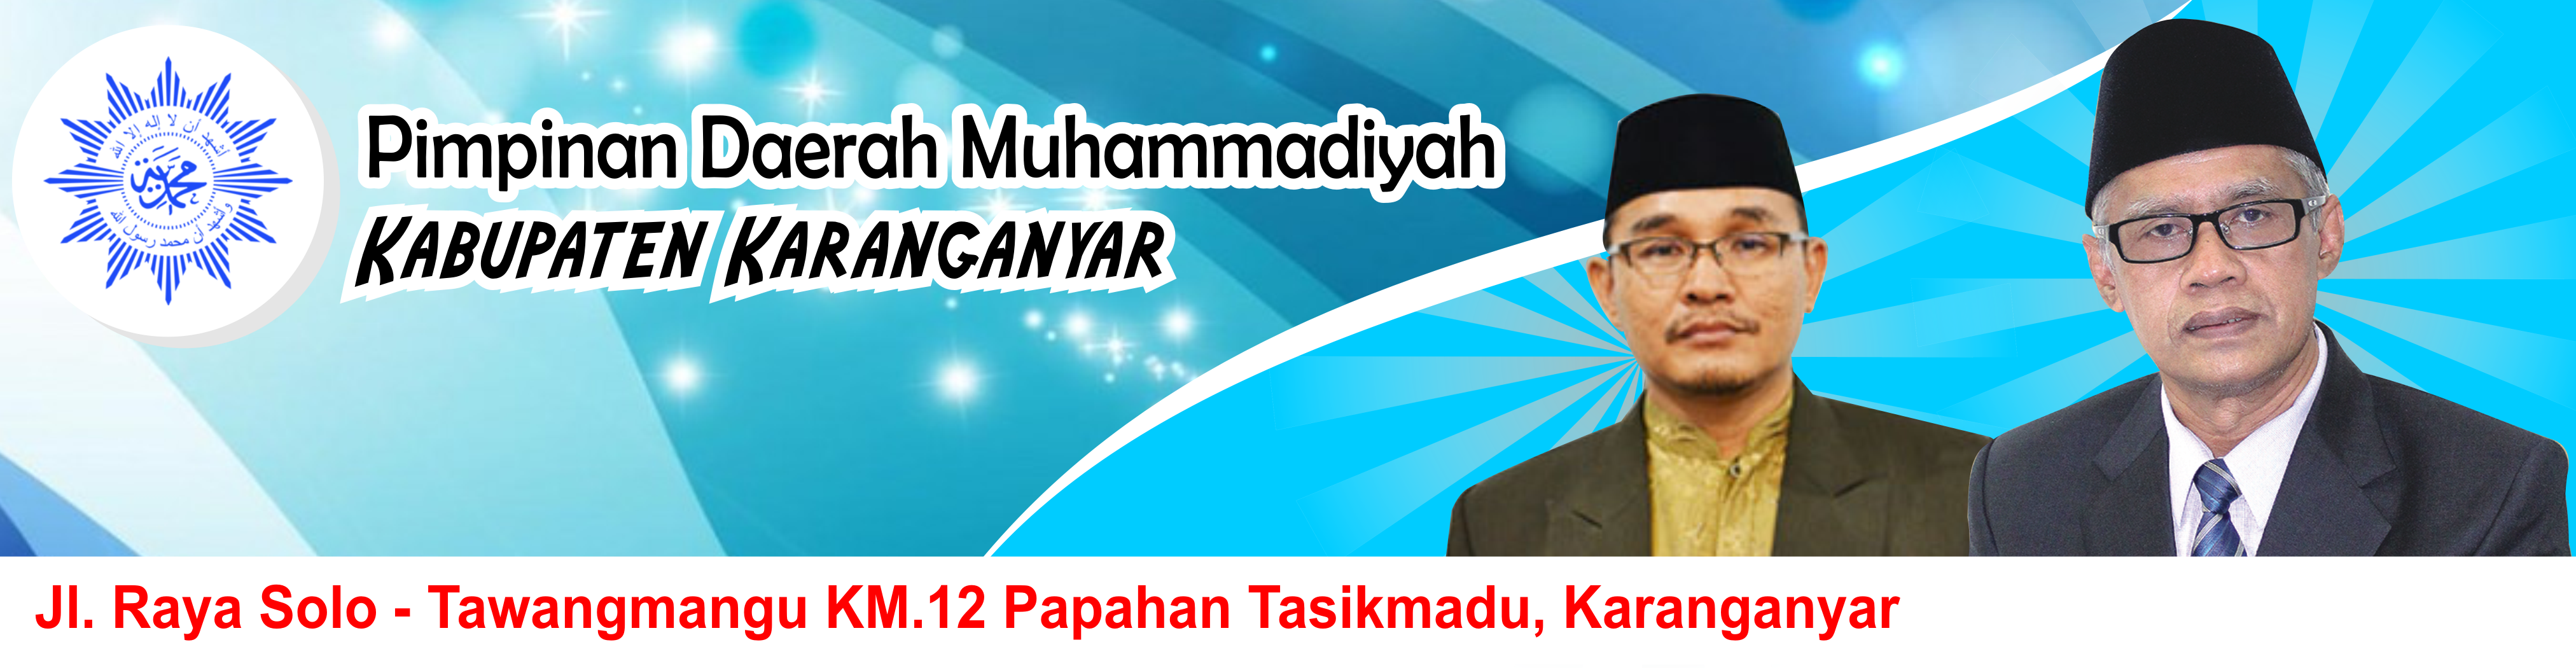 Majelis Tabligh Pimpinan Daerah Muhammadiyah Kabupaten Karanganyar